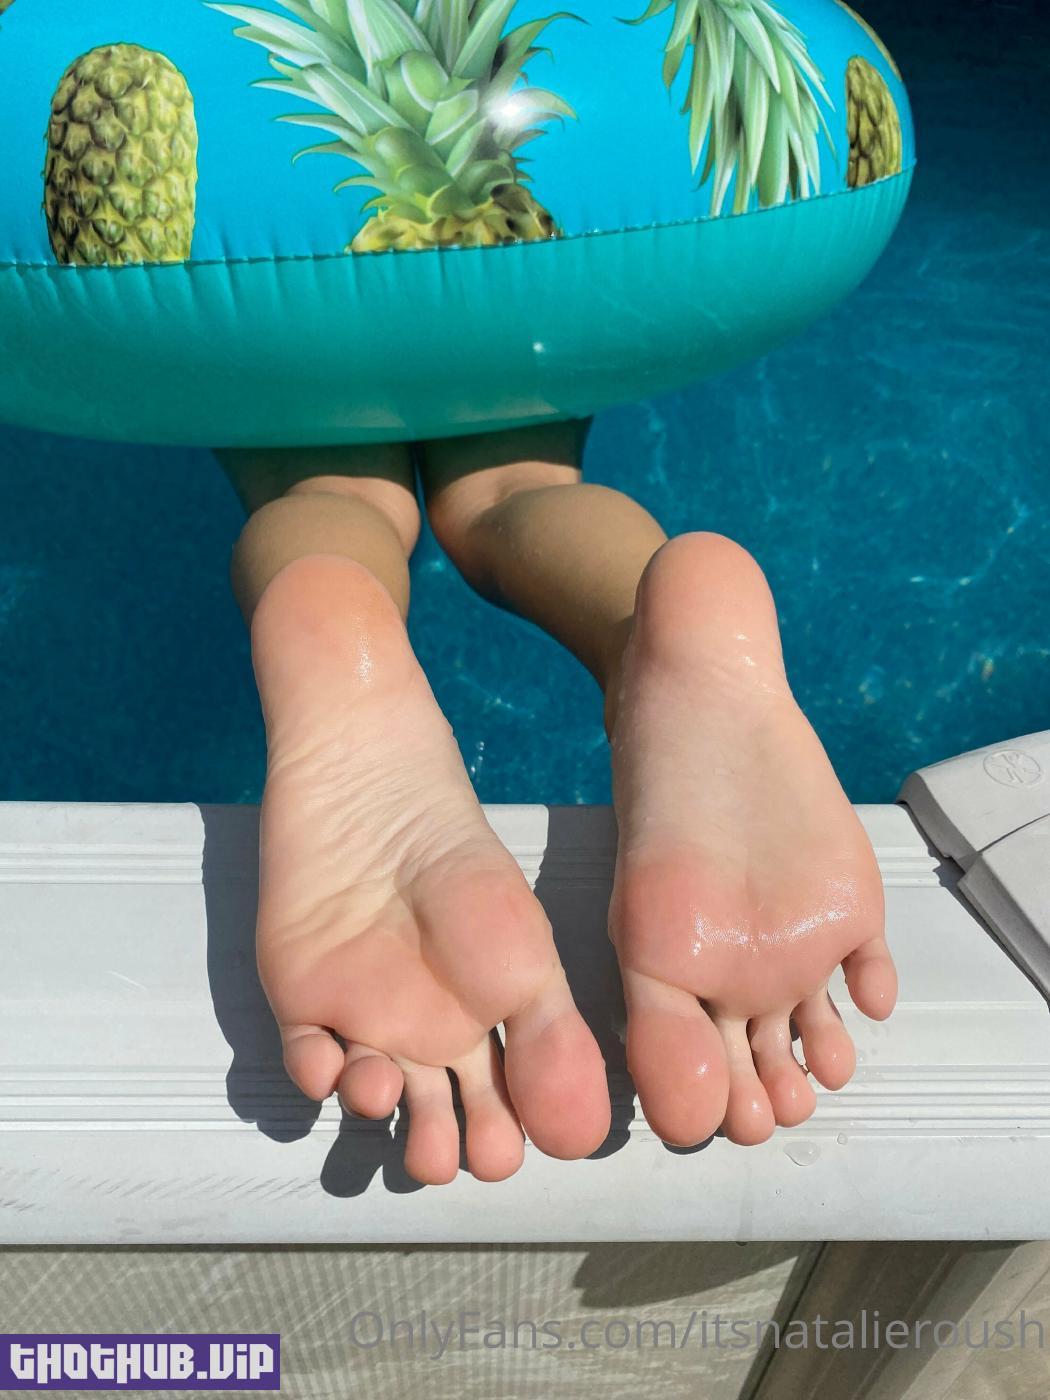 1662859570 180 Natalie Roush Wet Feet Onlyfans Set Leaked